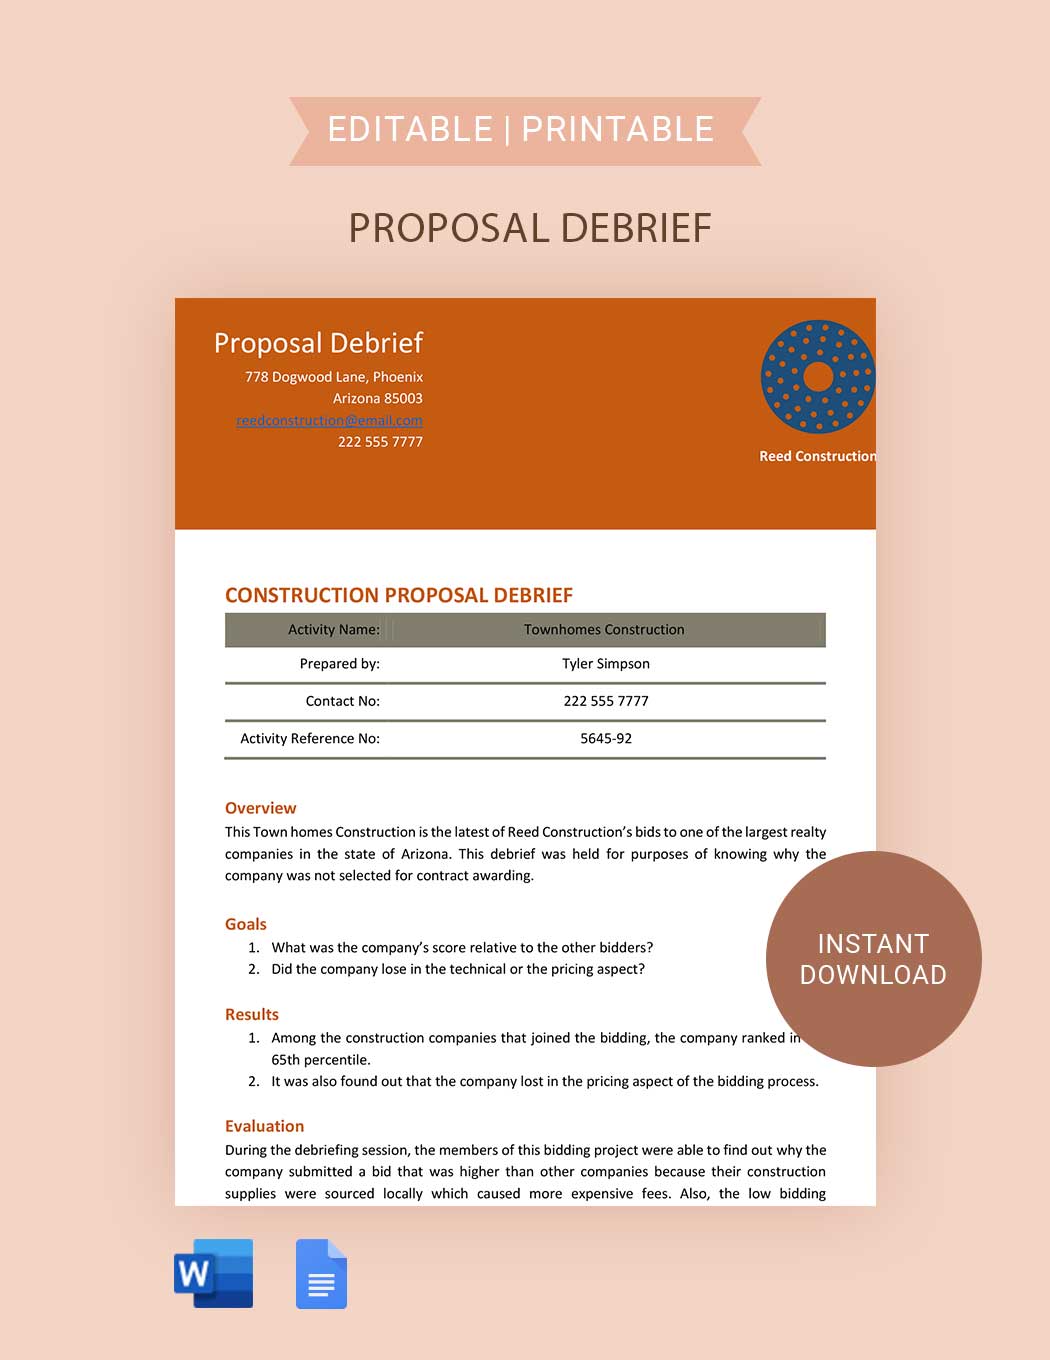 Proposal Debrief 